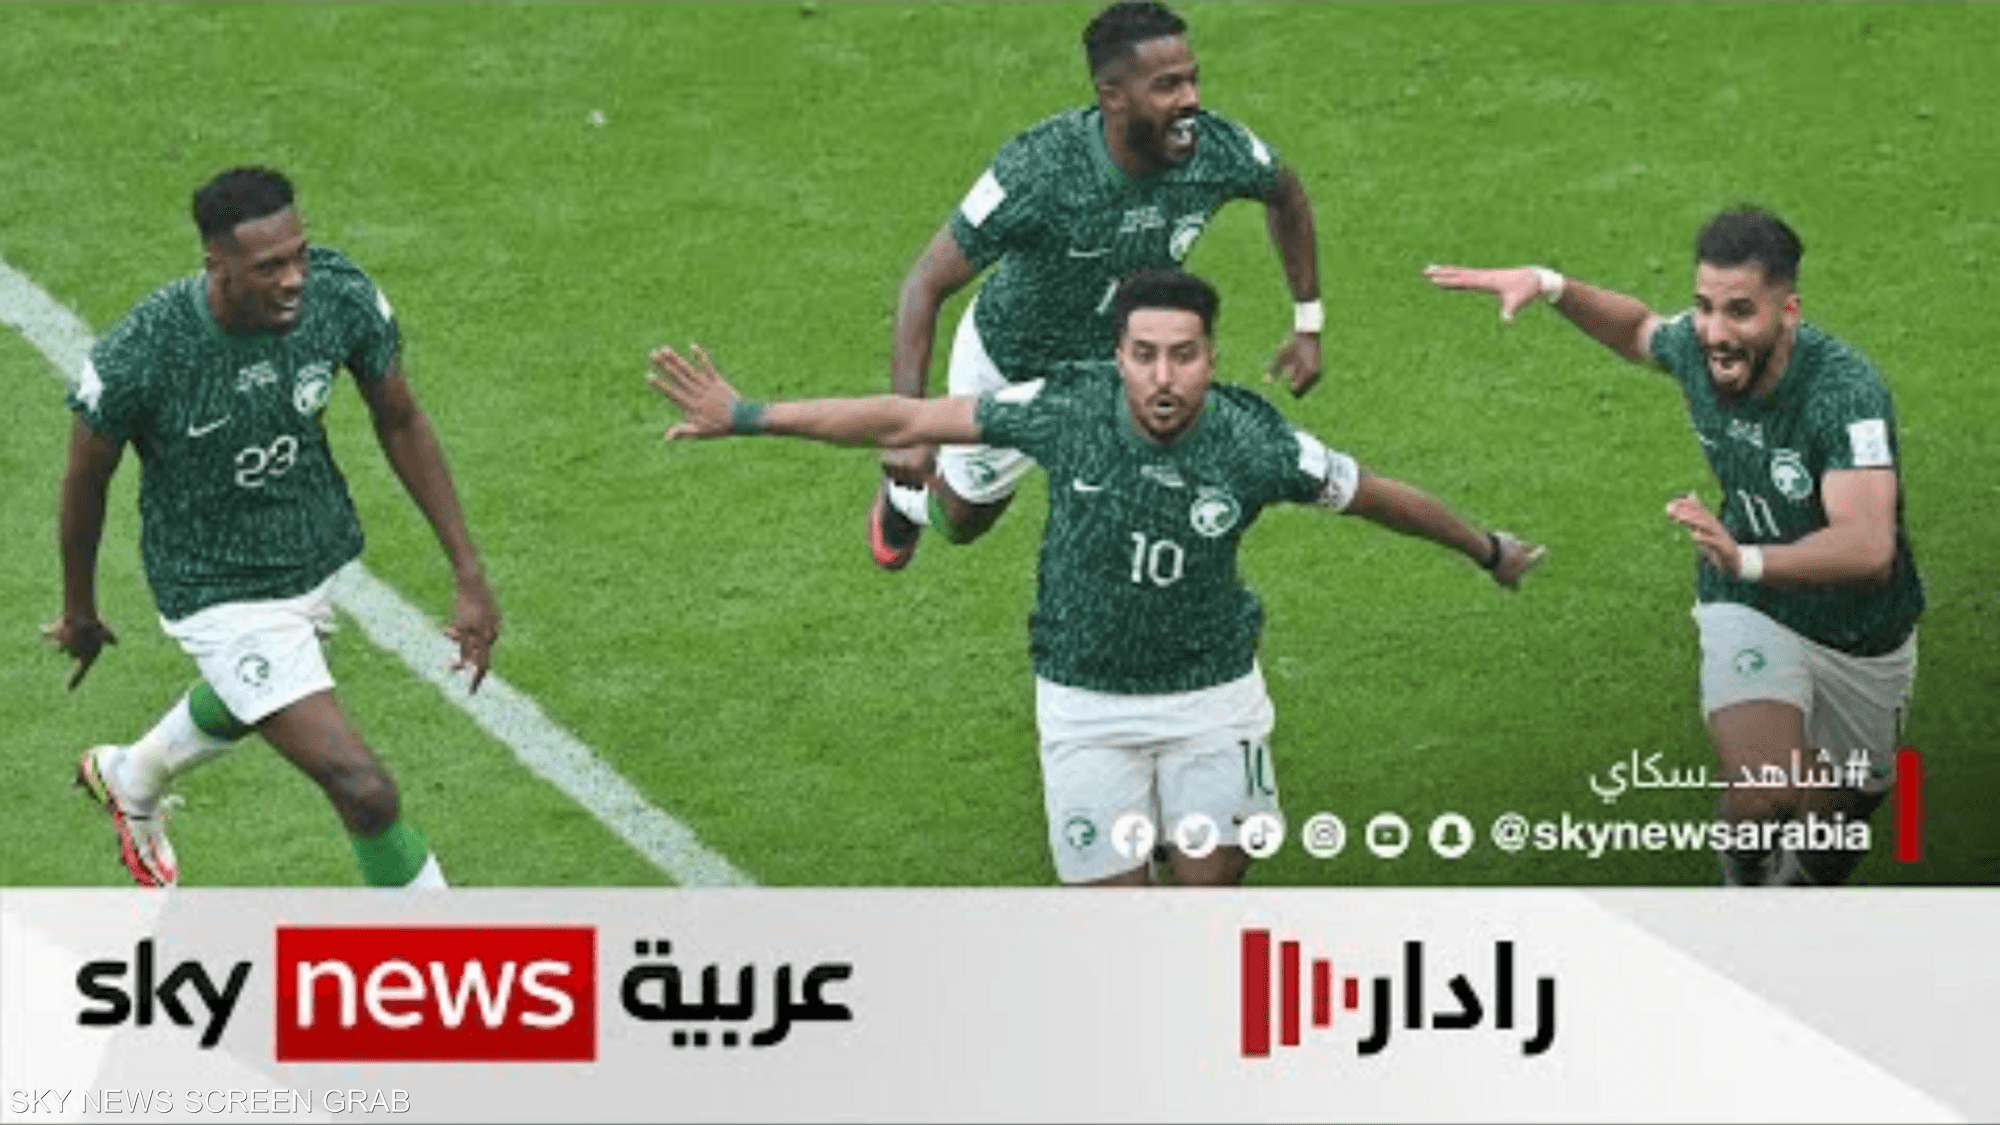 المنتخبات العربية تحقق انطلاقة جيدة وواعدة في مونديال قطر